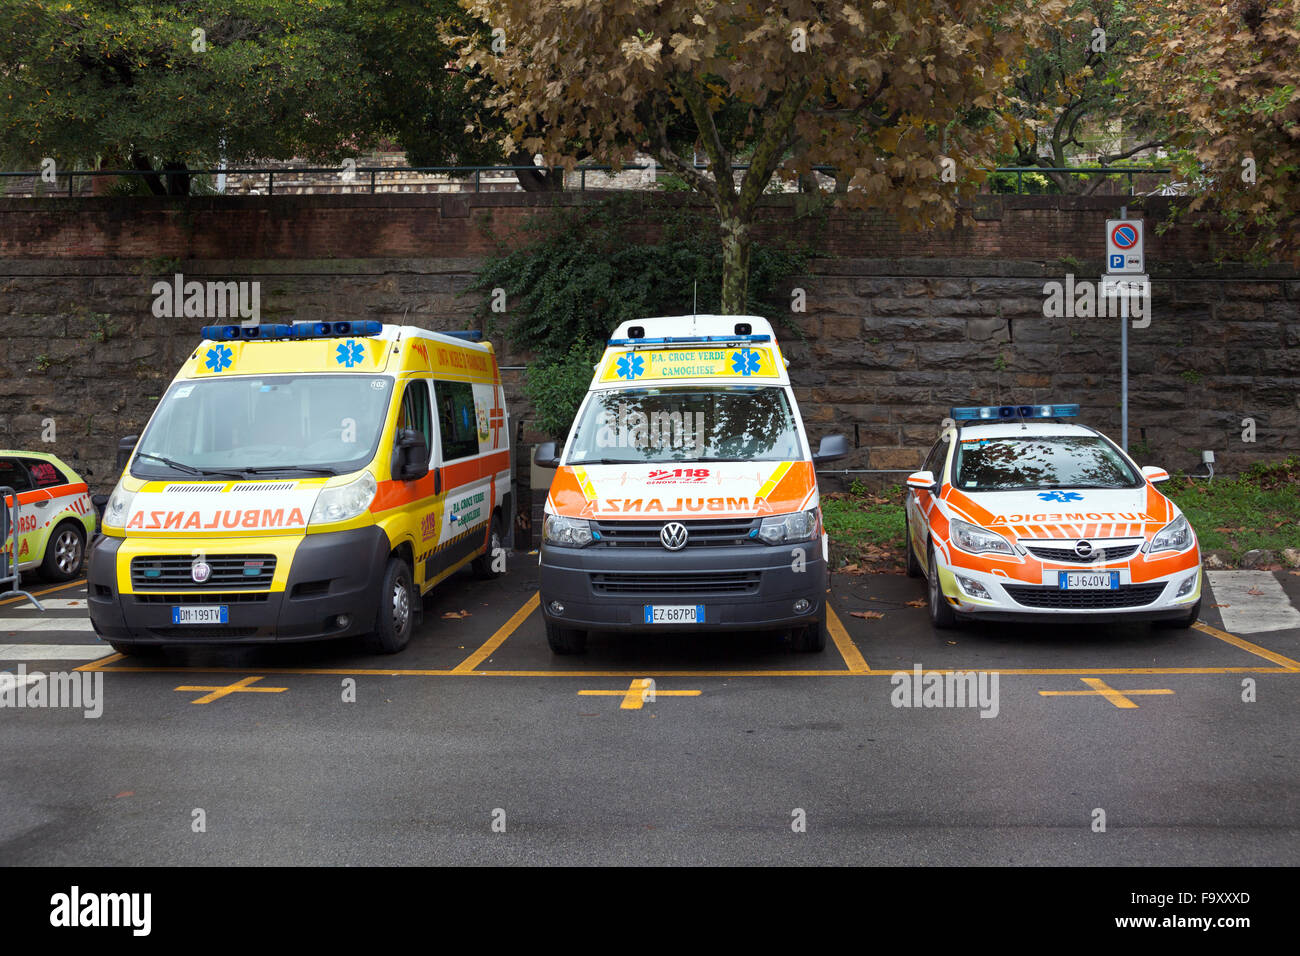 Ambulancia italiana coches estacionados en un parking Foto de stock